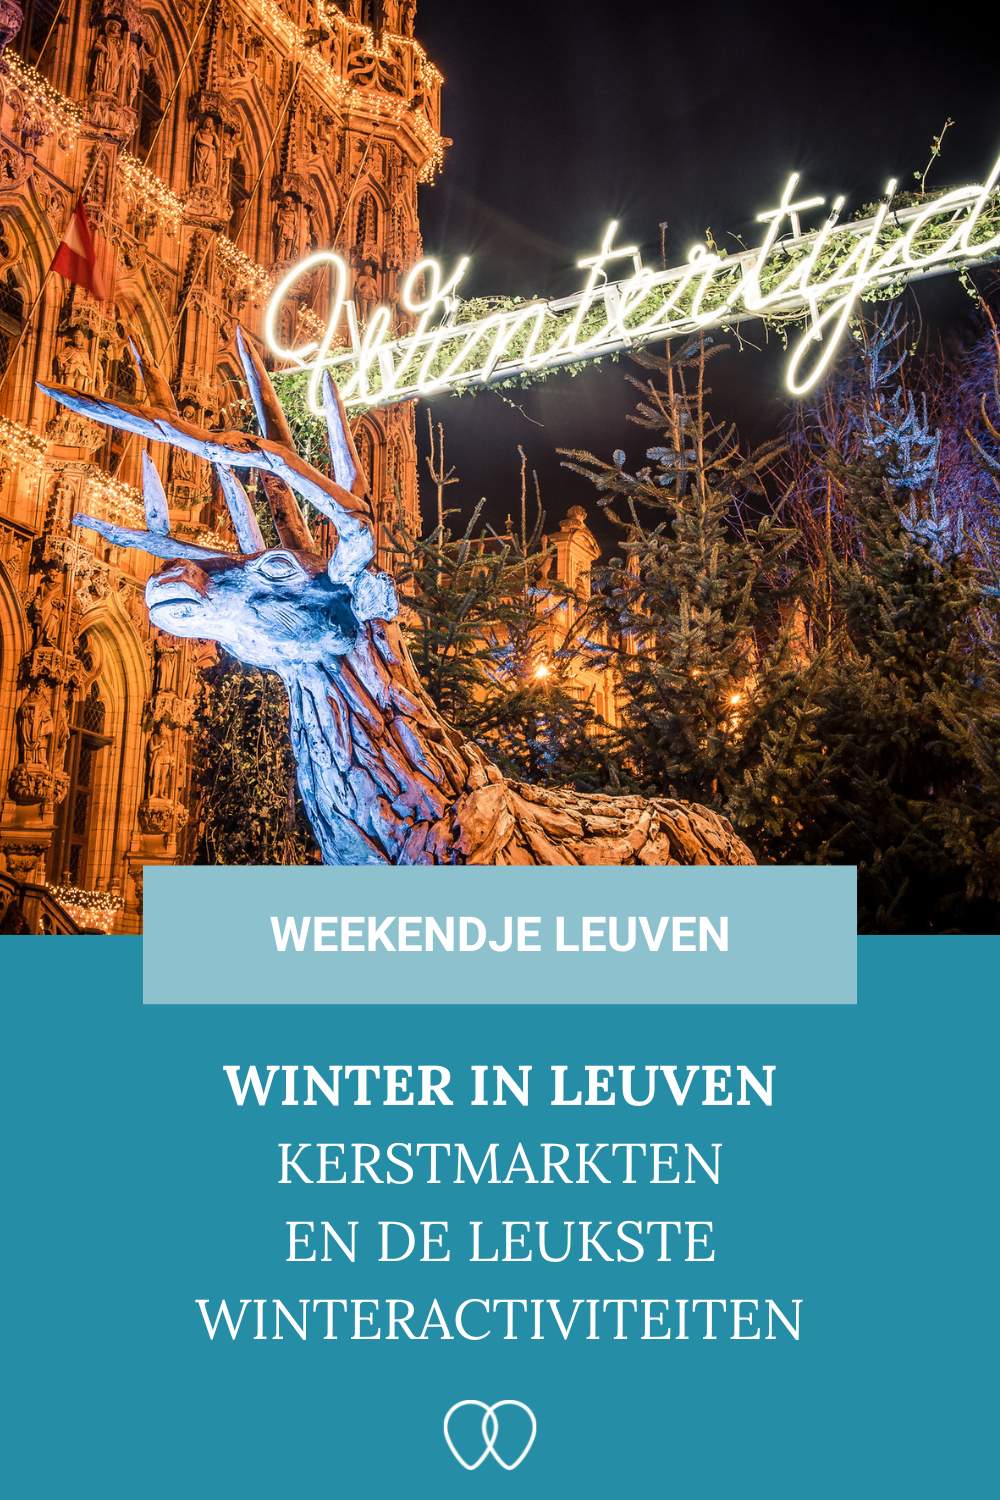 Kerstmarkt Leuven: winter in Leuven? Ontdek de leukste kerstmarkt in Leuven | Mooistestedentrips.nl